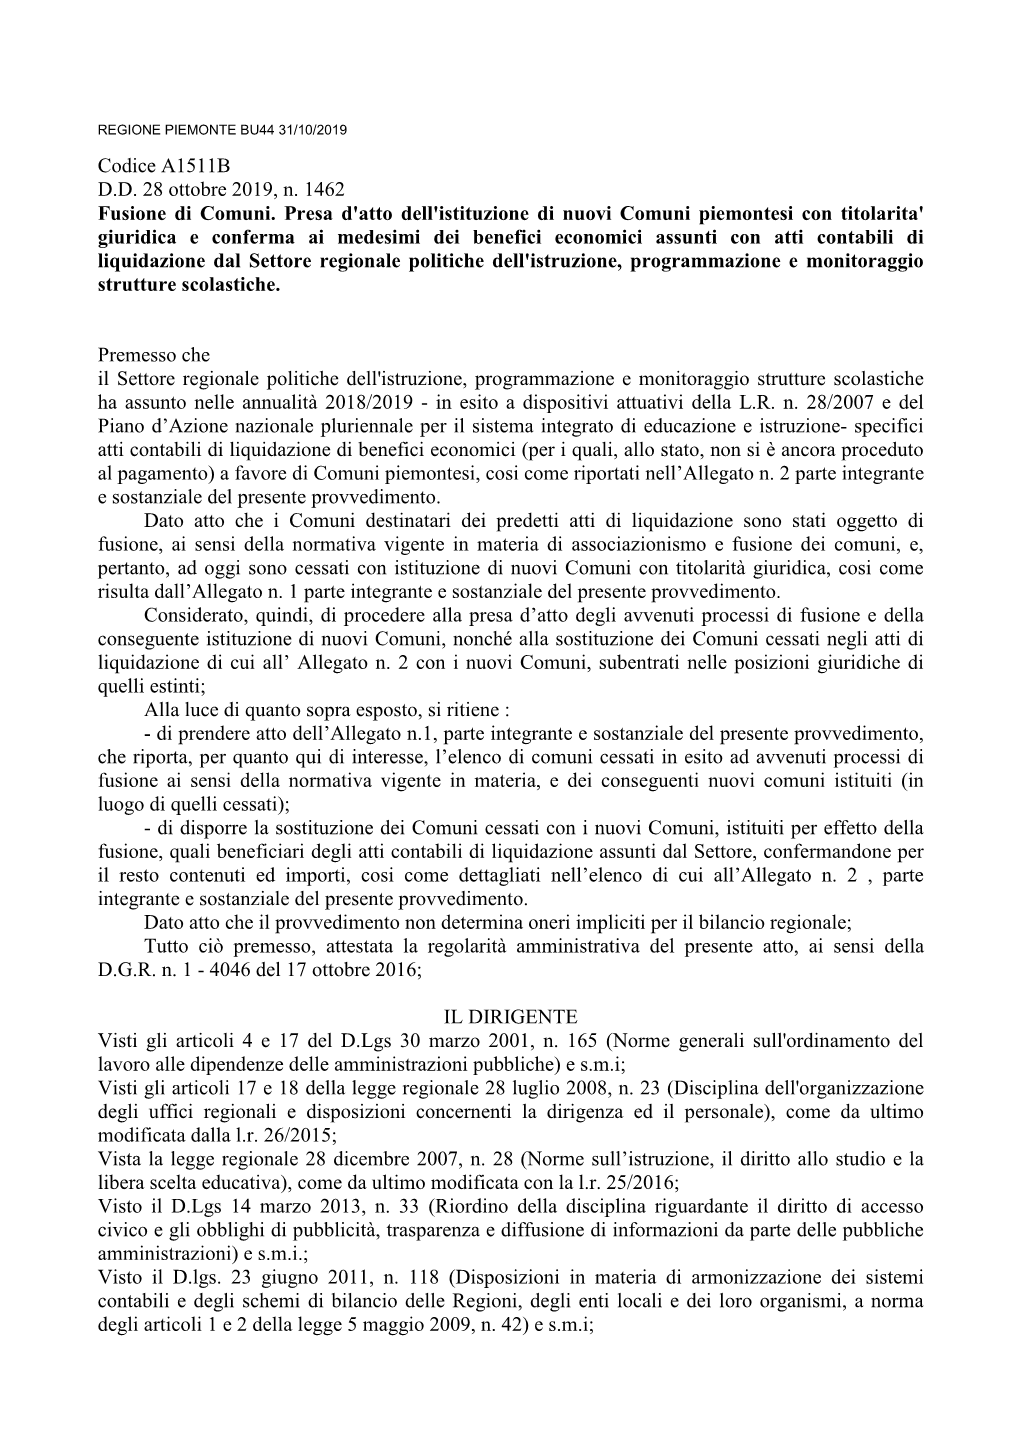 Codice A1511B D.D. 28 Ottobre 2019, N. 1462 Fusione Di Comuni. Presa D